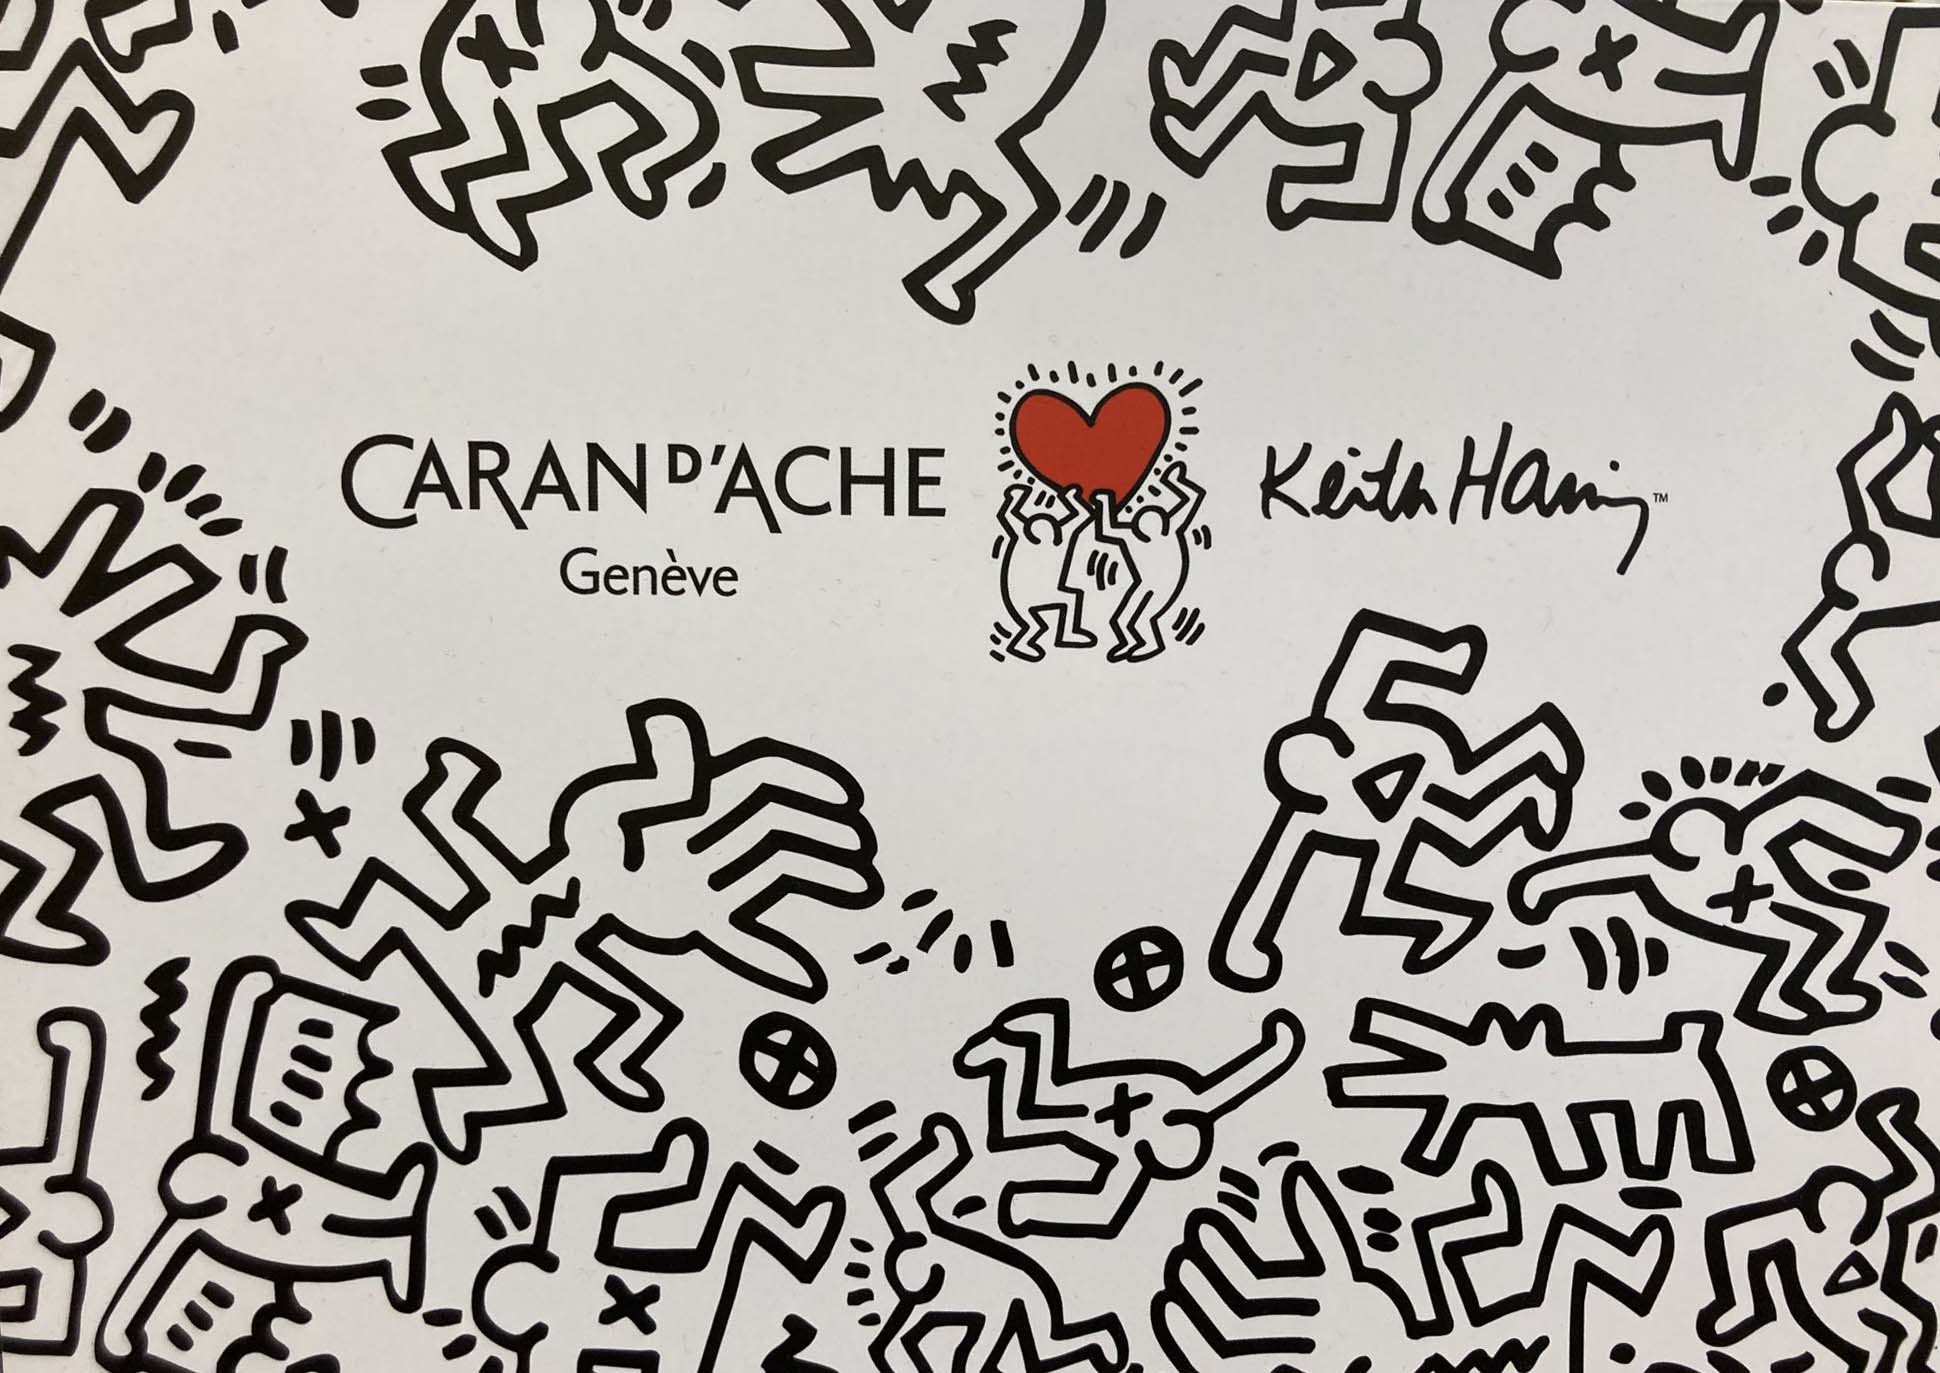 Neue Kooperation von Caran D'ache & Keith Haring